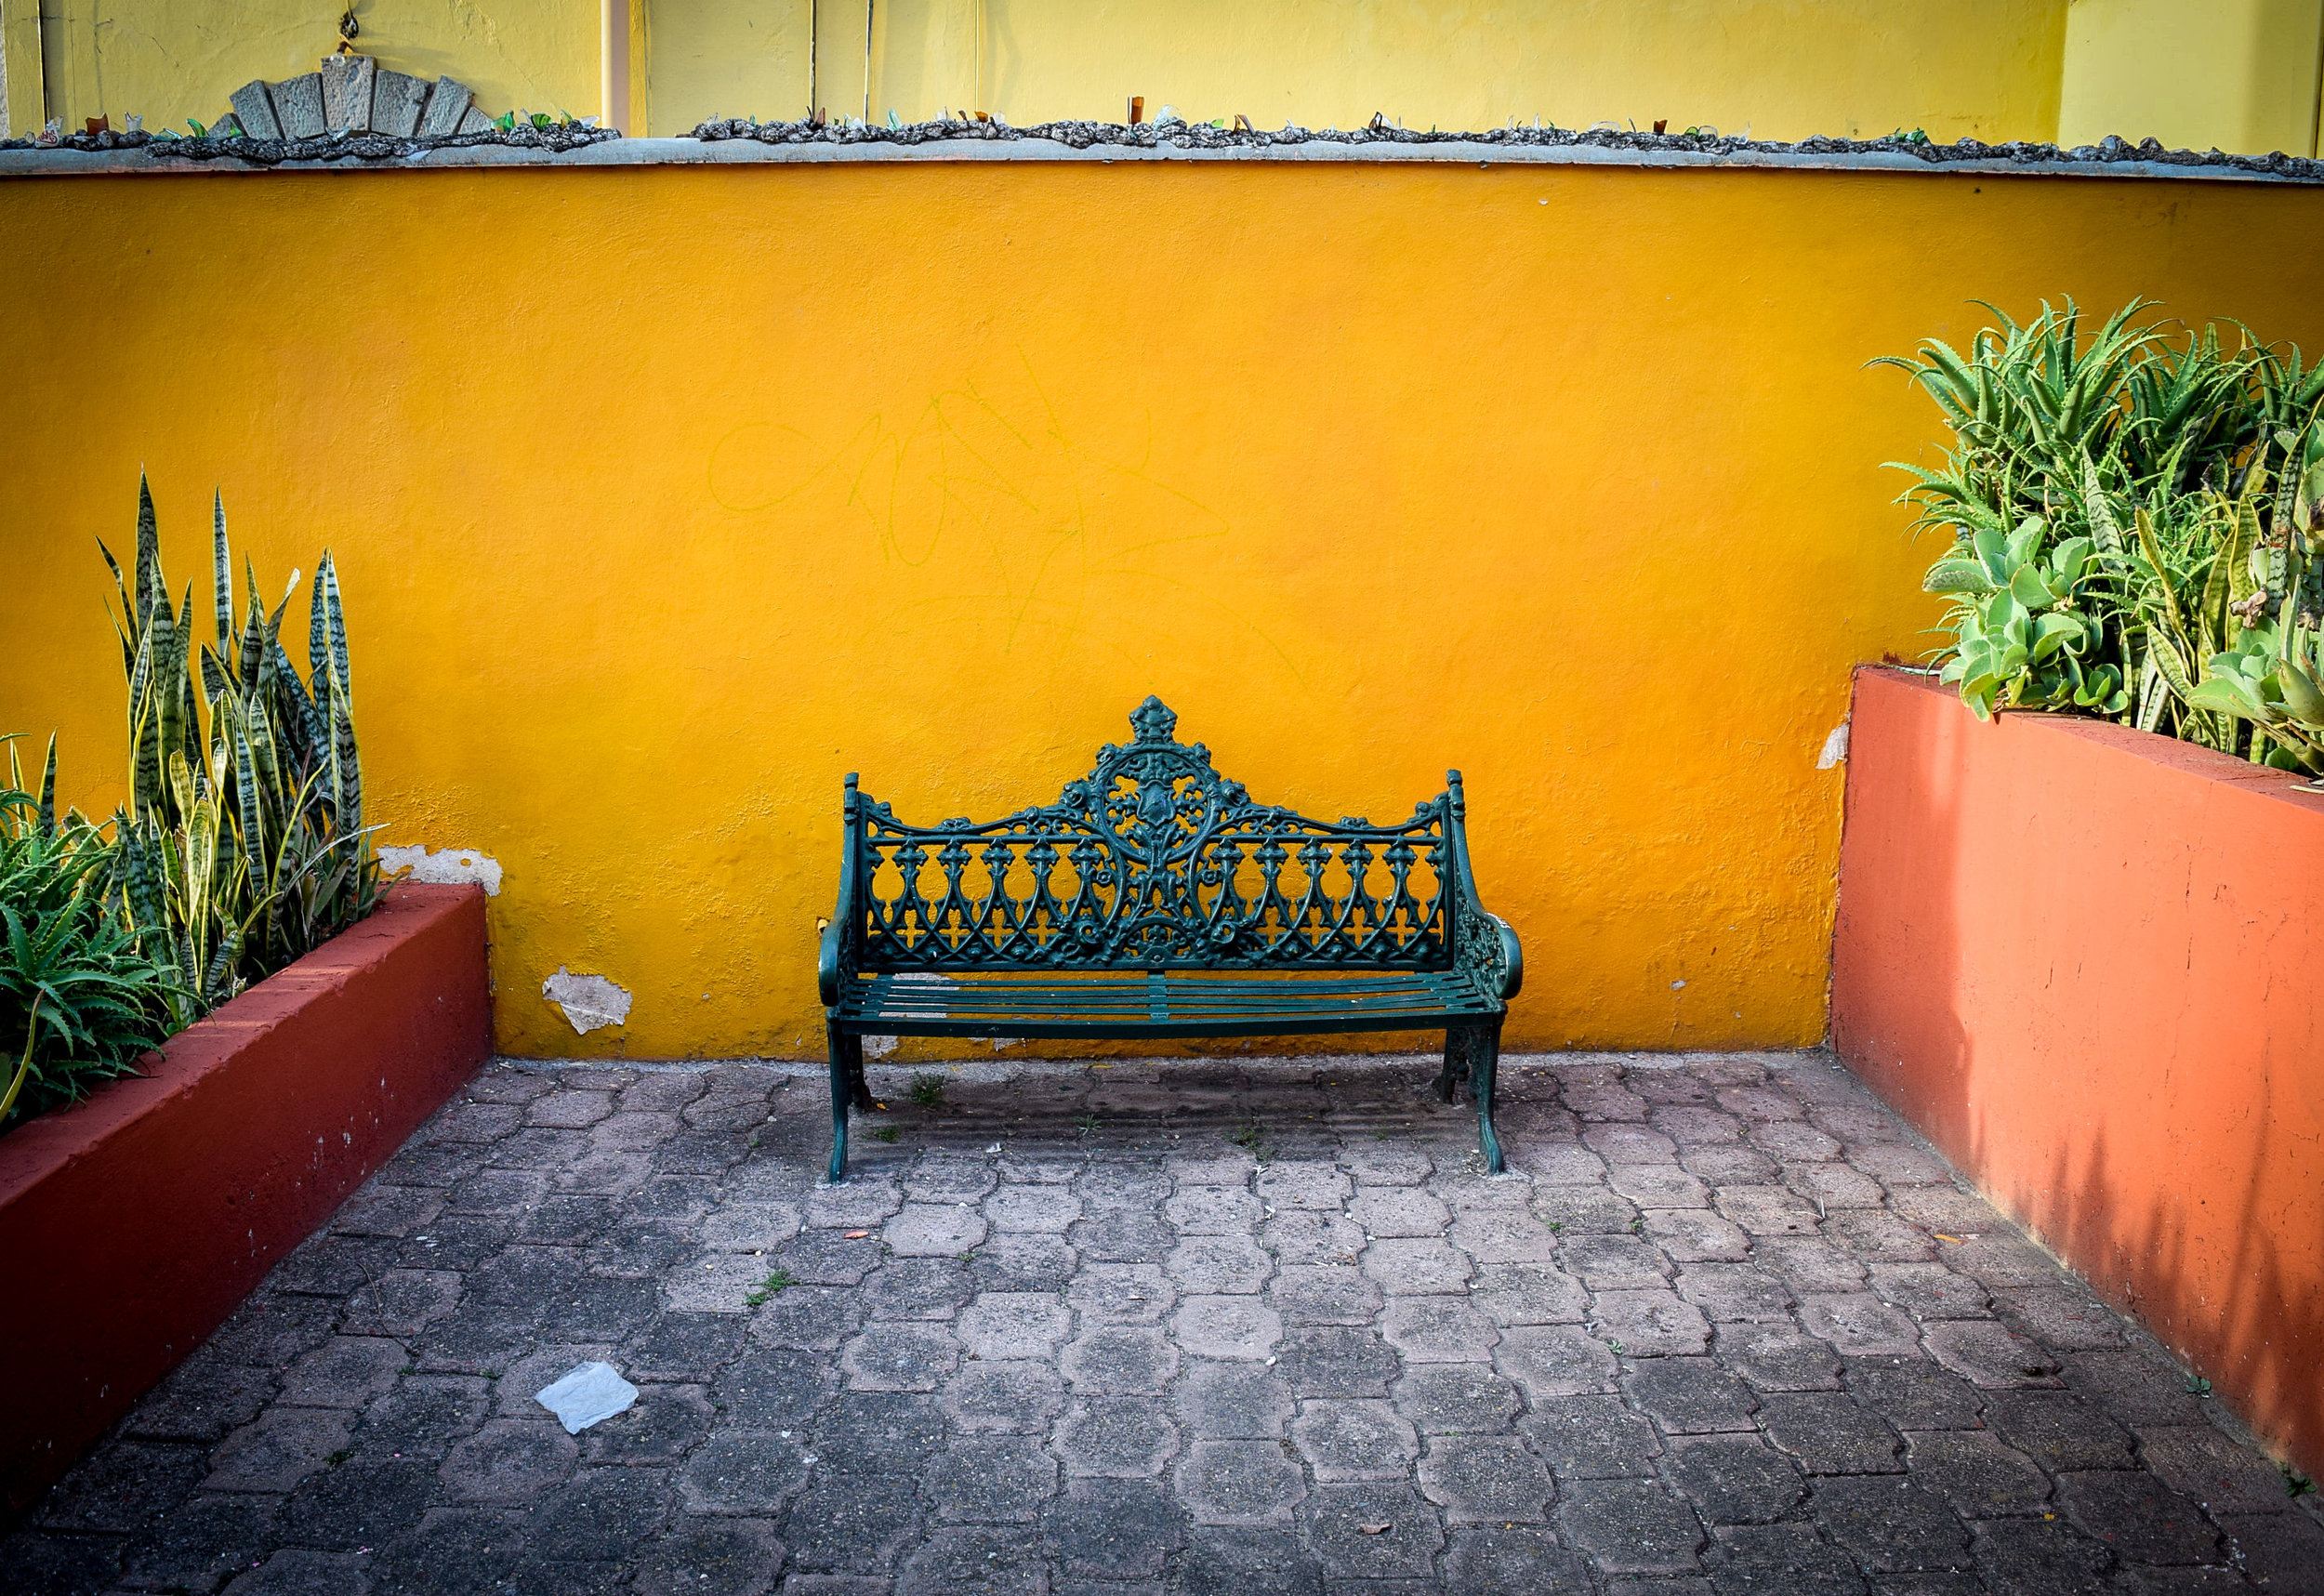 Introducing Guanajuato in 30 Distinct Images